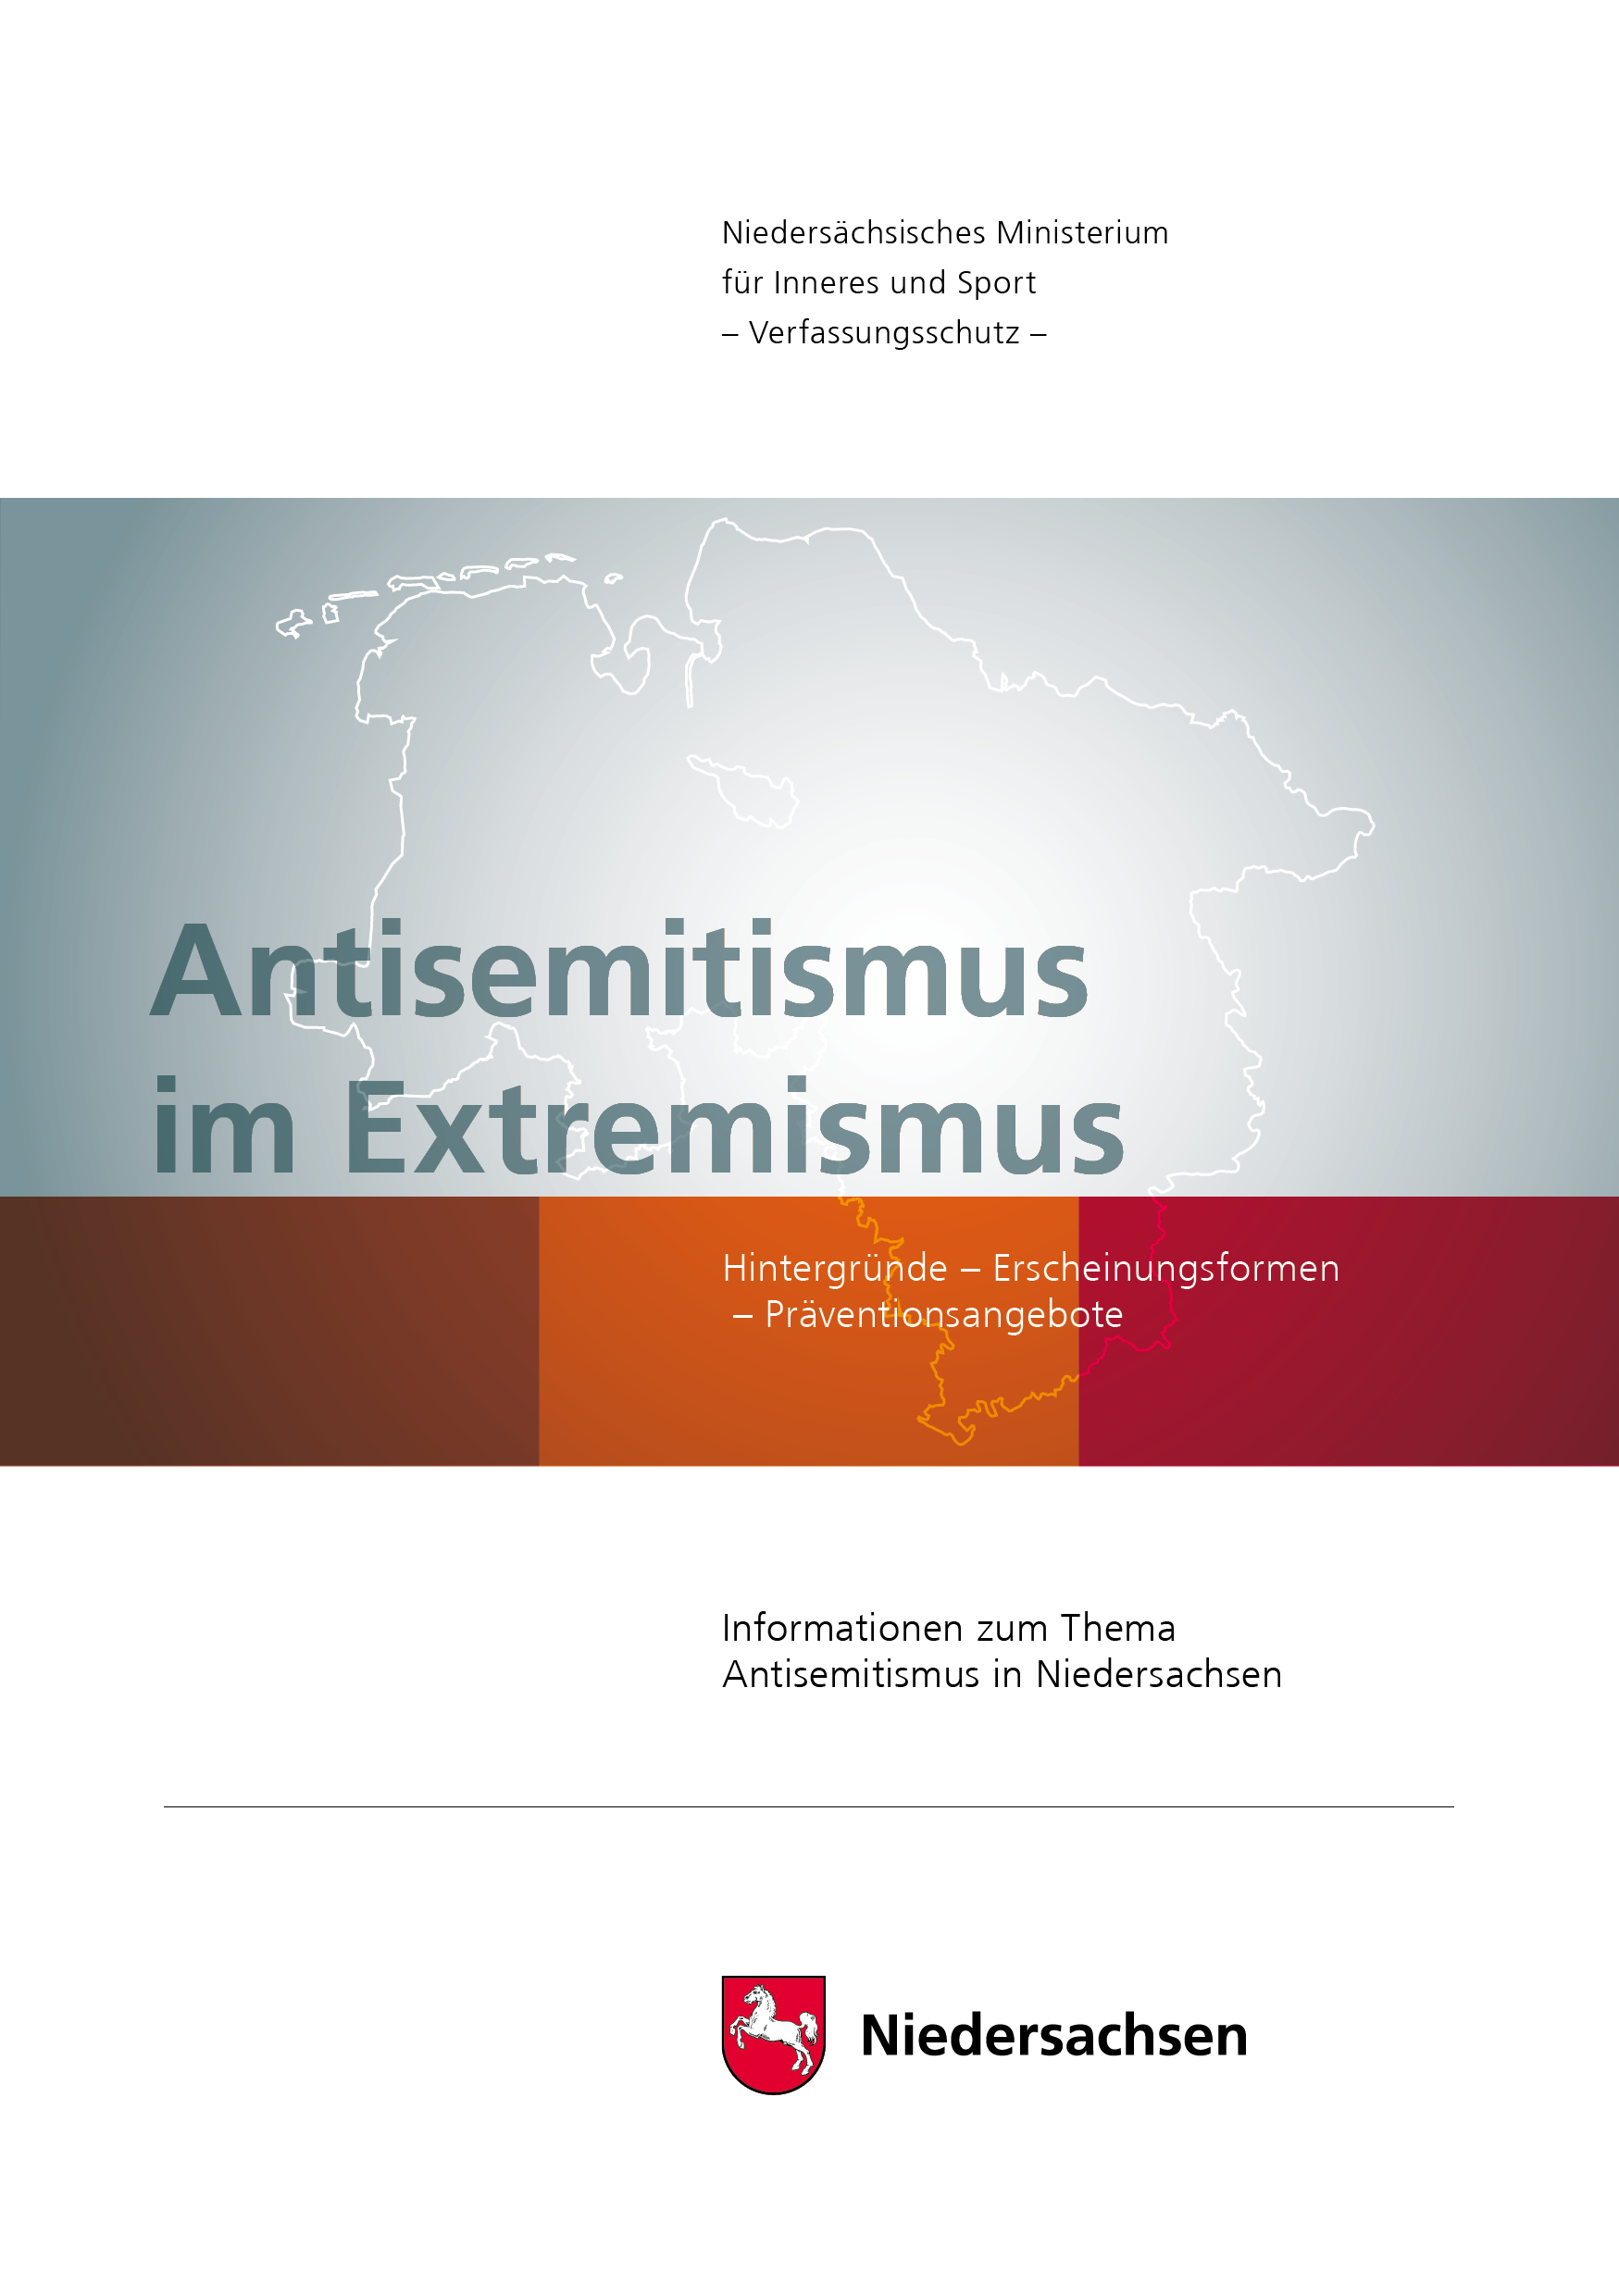 Titelbild der Broschüre "Antisemitismus im Extremismus"